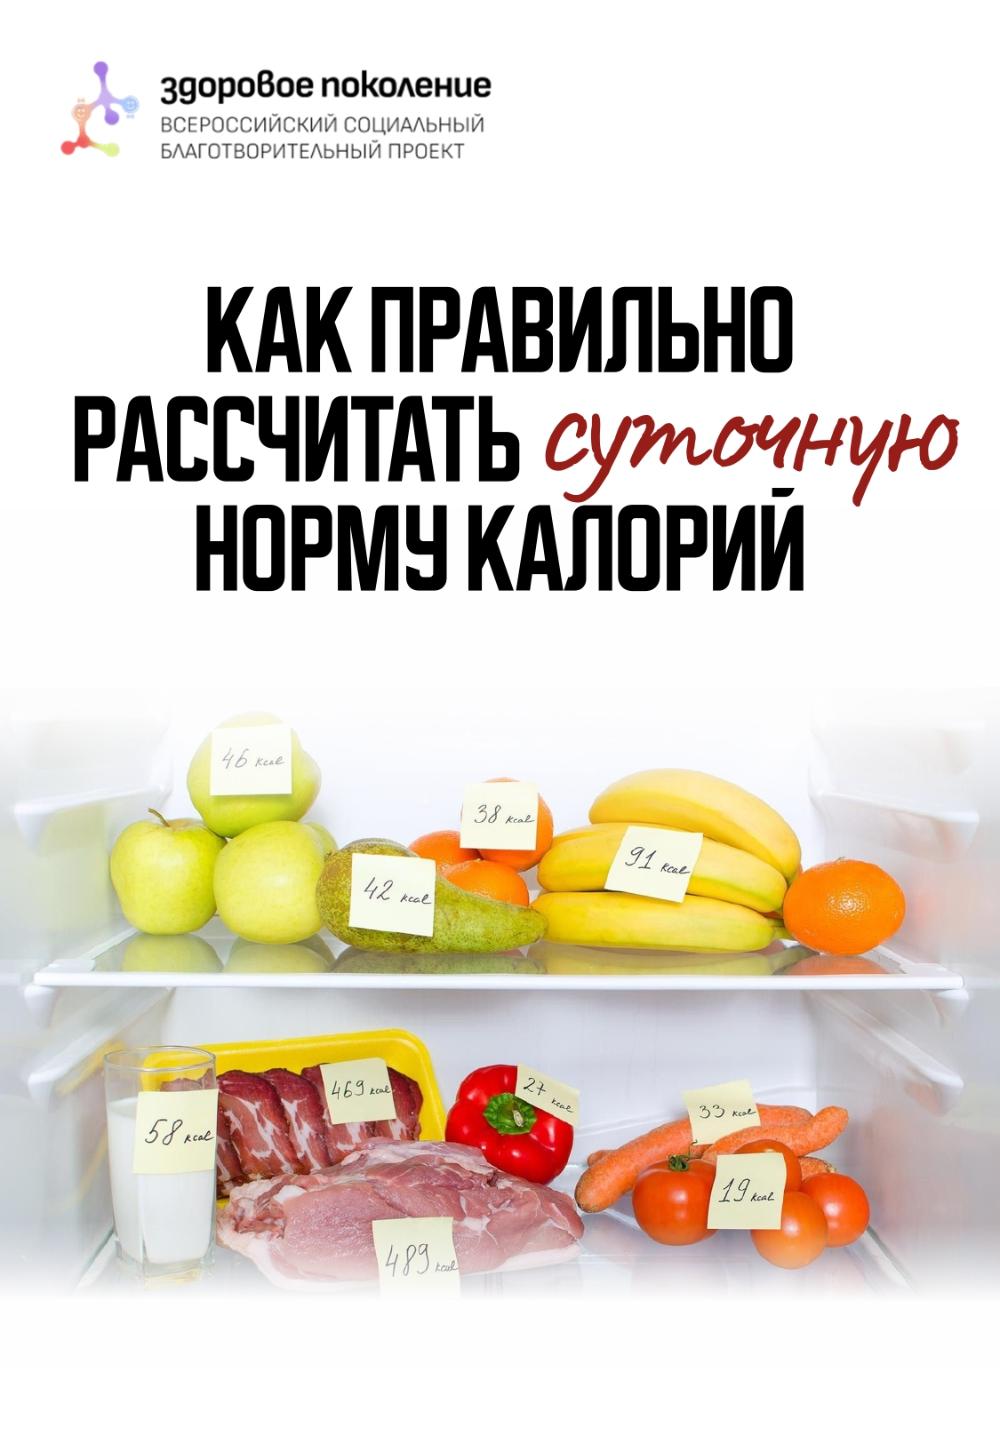 Министерство здравоохранения региона совместно со Всероссийским социальным благотворительным проектом “Здоровое поколение” приглашают всех граждан воспользоваться полезной функцией в рамках "Недели подсчета калорий"